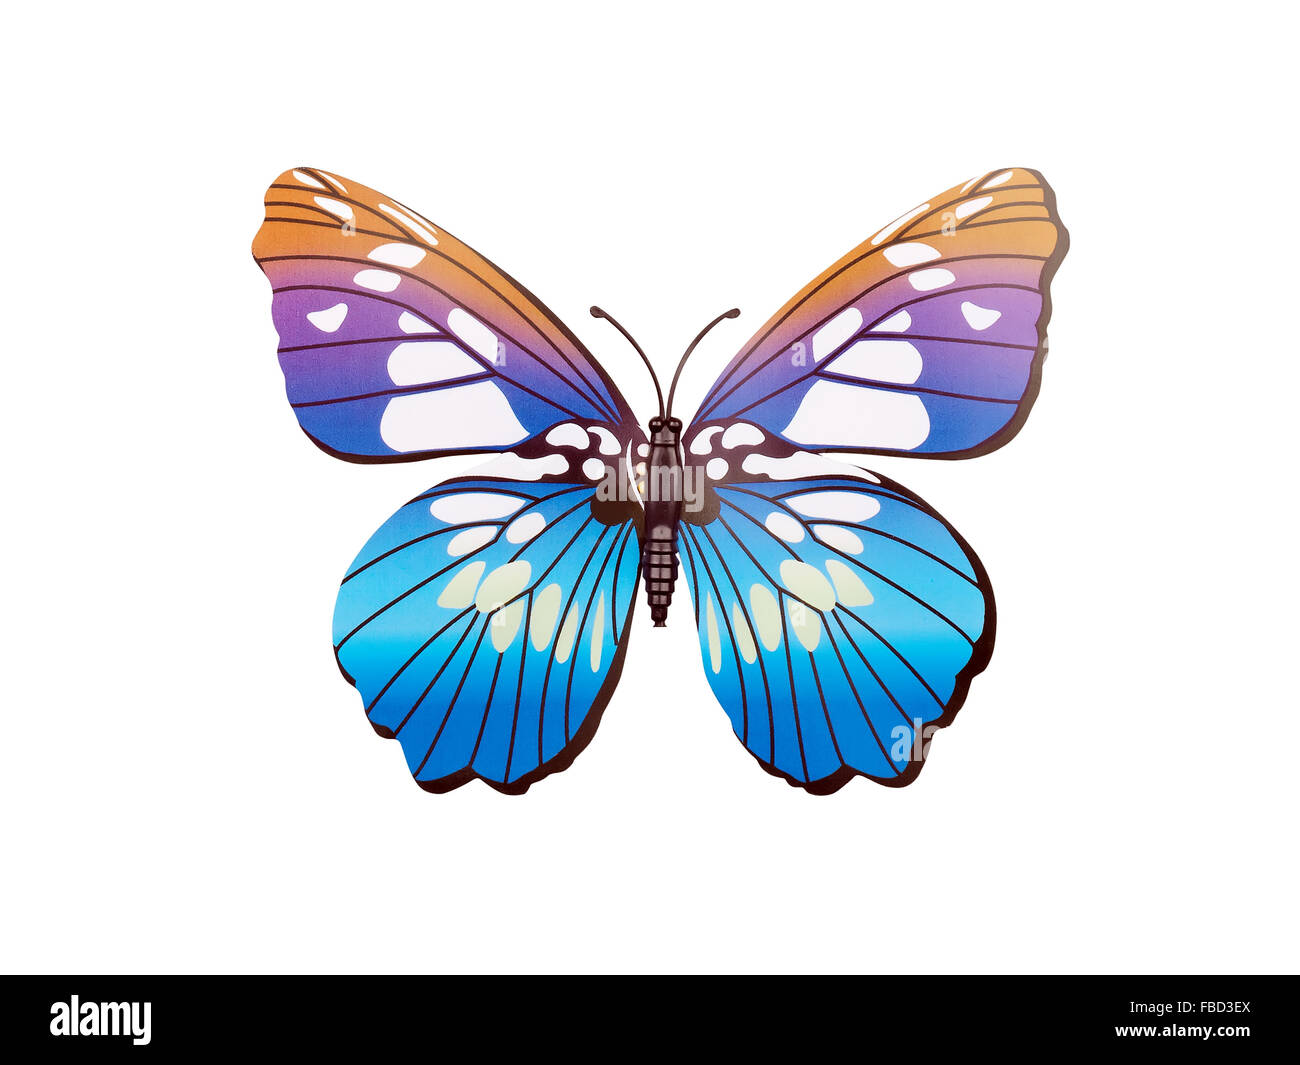 Butterfly adesivo parete isolata su sfondo bianco Foto Stock